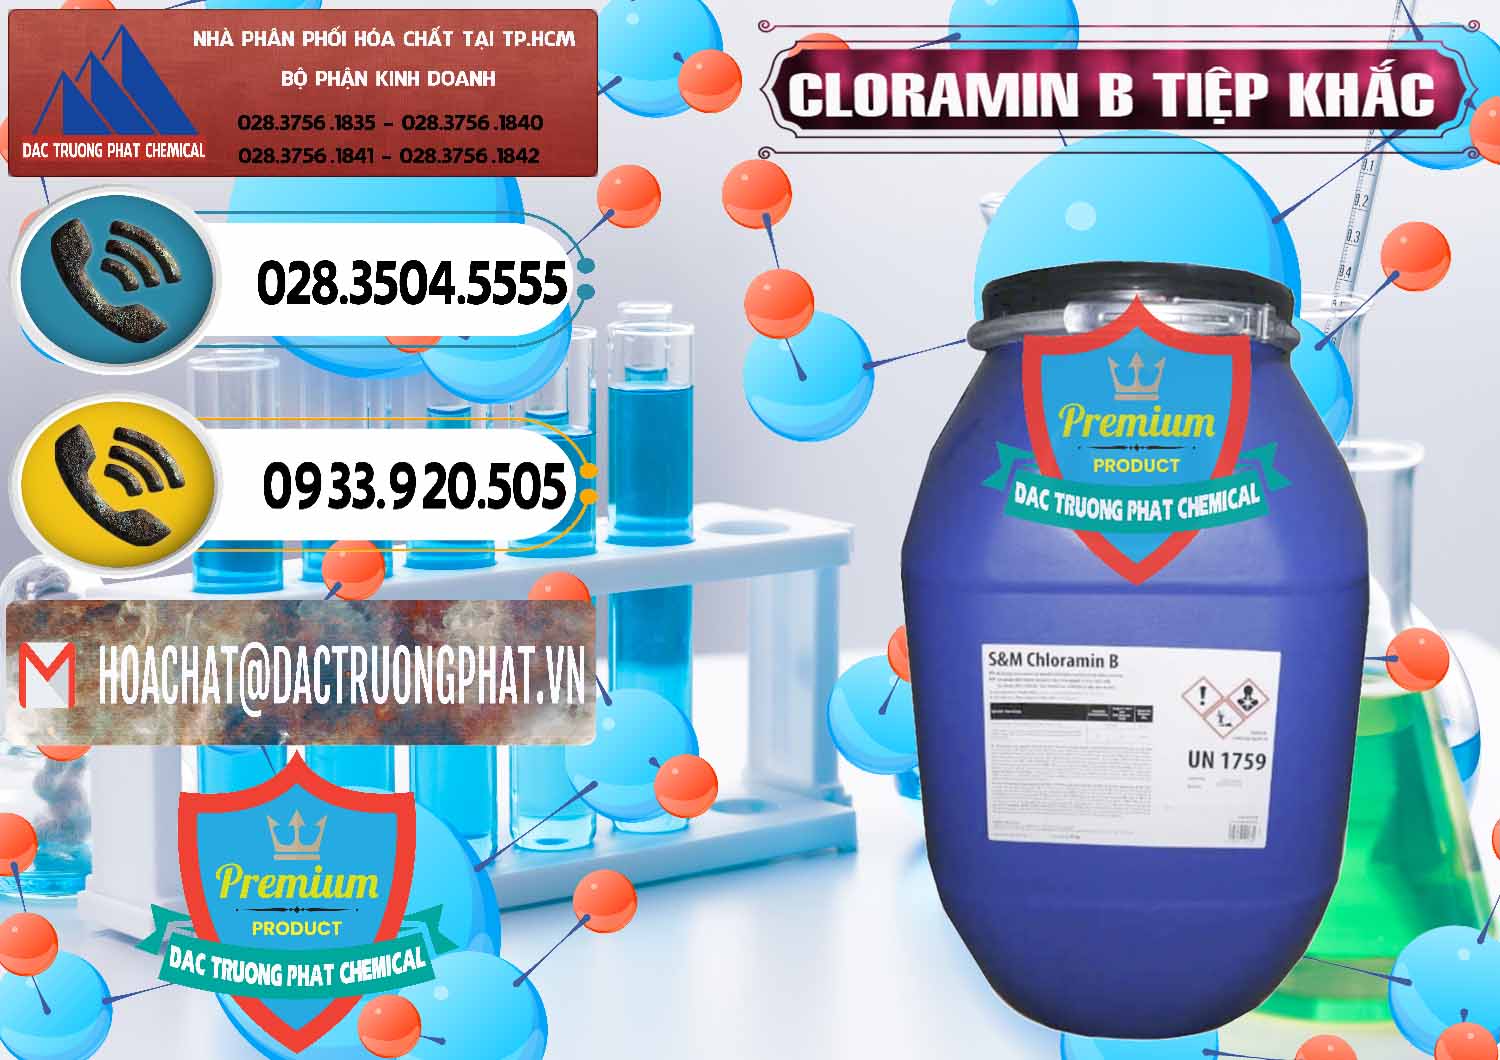 Công ty chuyên cung cấp & bán Cloramin B Cộng Hòa Séc Tiệp Khắc Czech Republic - 0299 - Cty chuyên cung ứng ( phân phối ) hóa chất tại TP.HCM - hoachatdetnhuom.vn